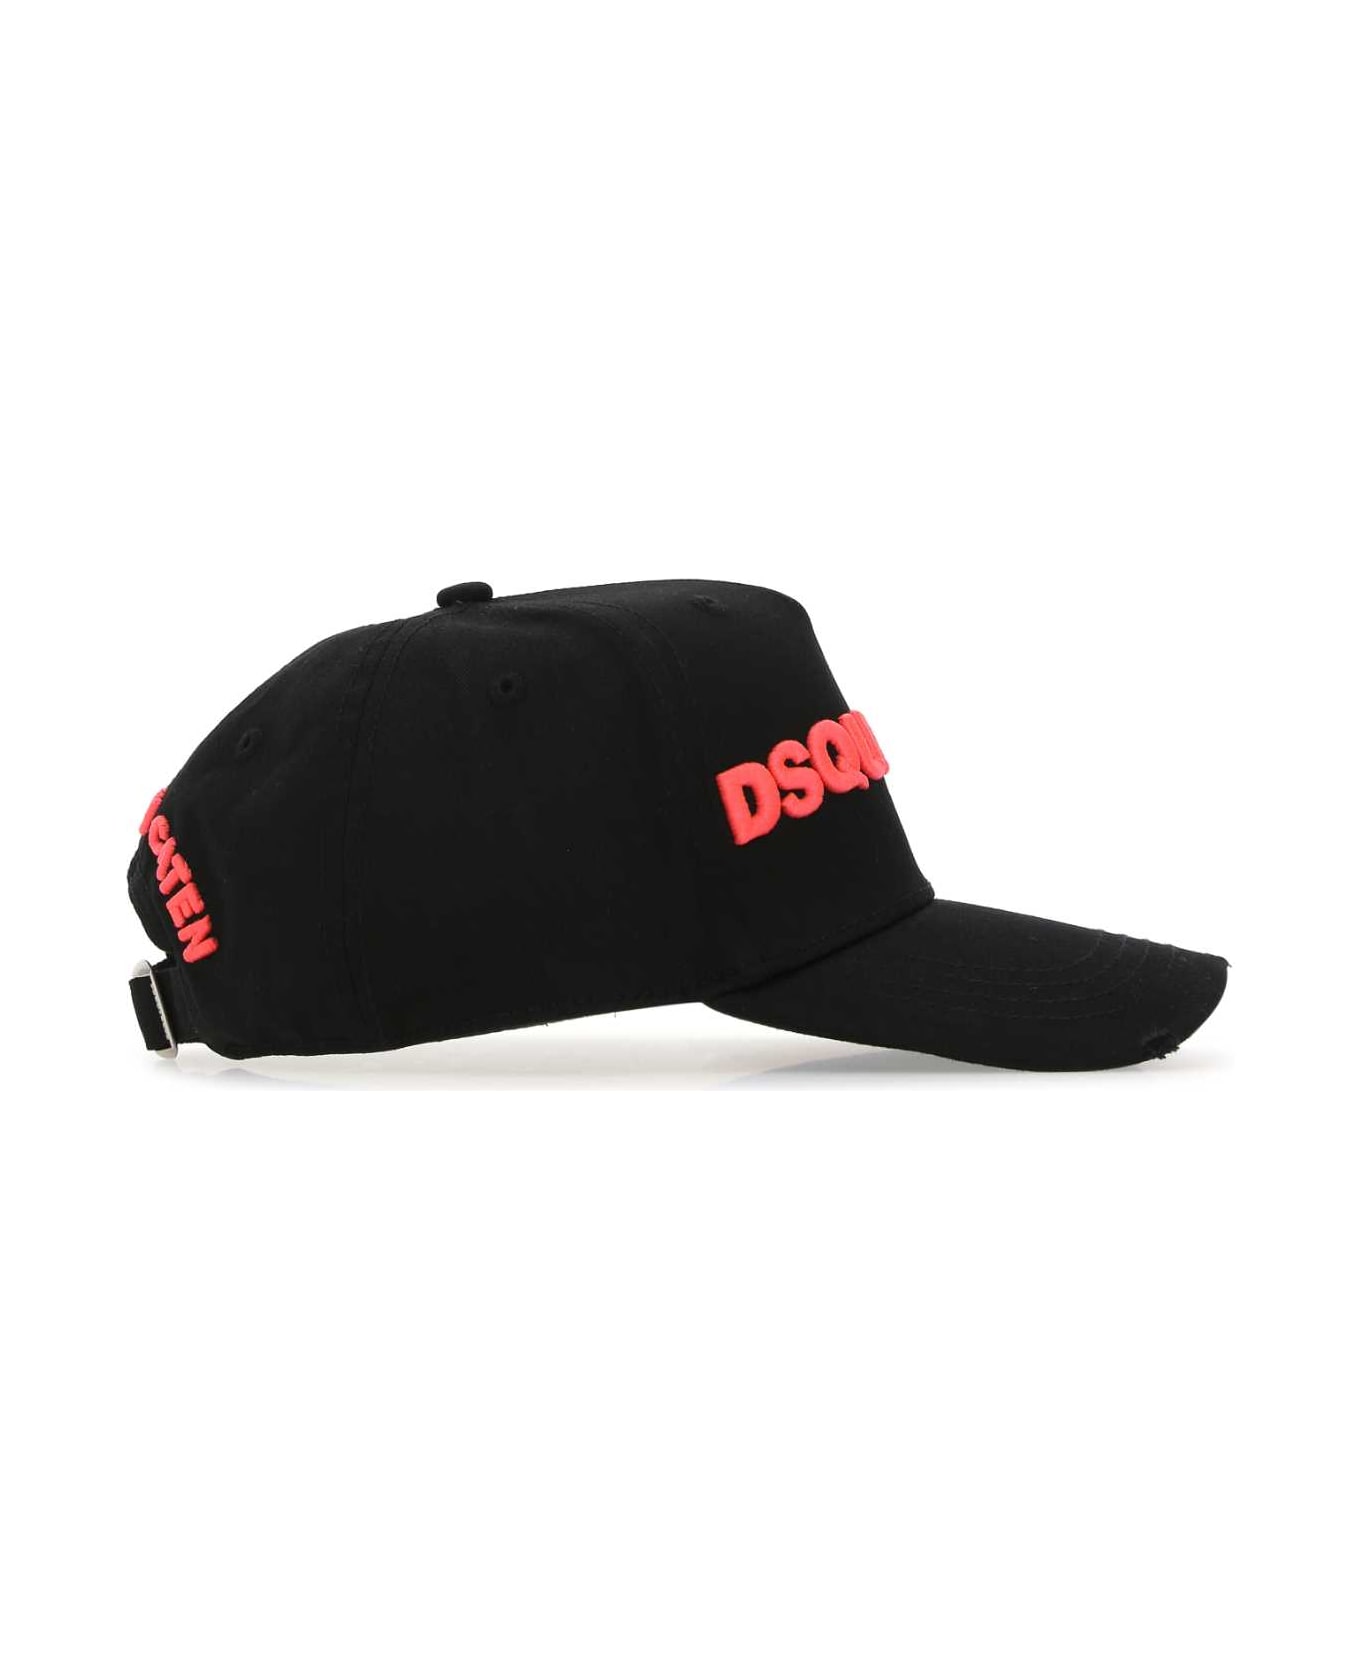 Dsquared2 Black Cotton Baseball Cap - M221 帽子